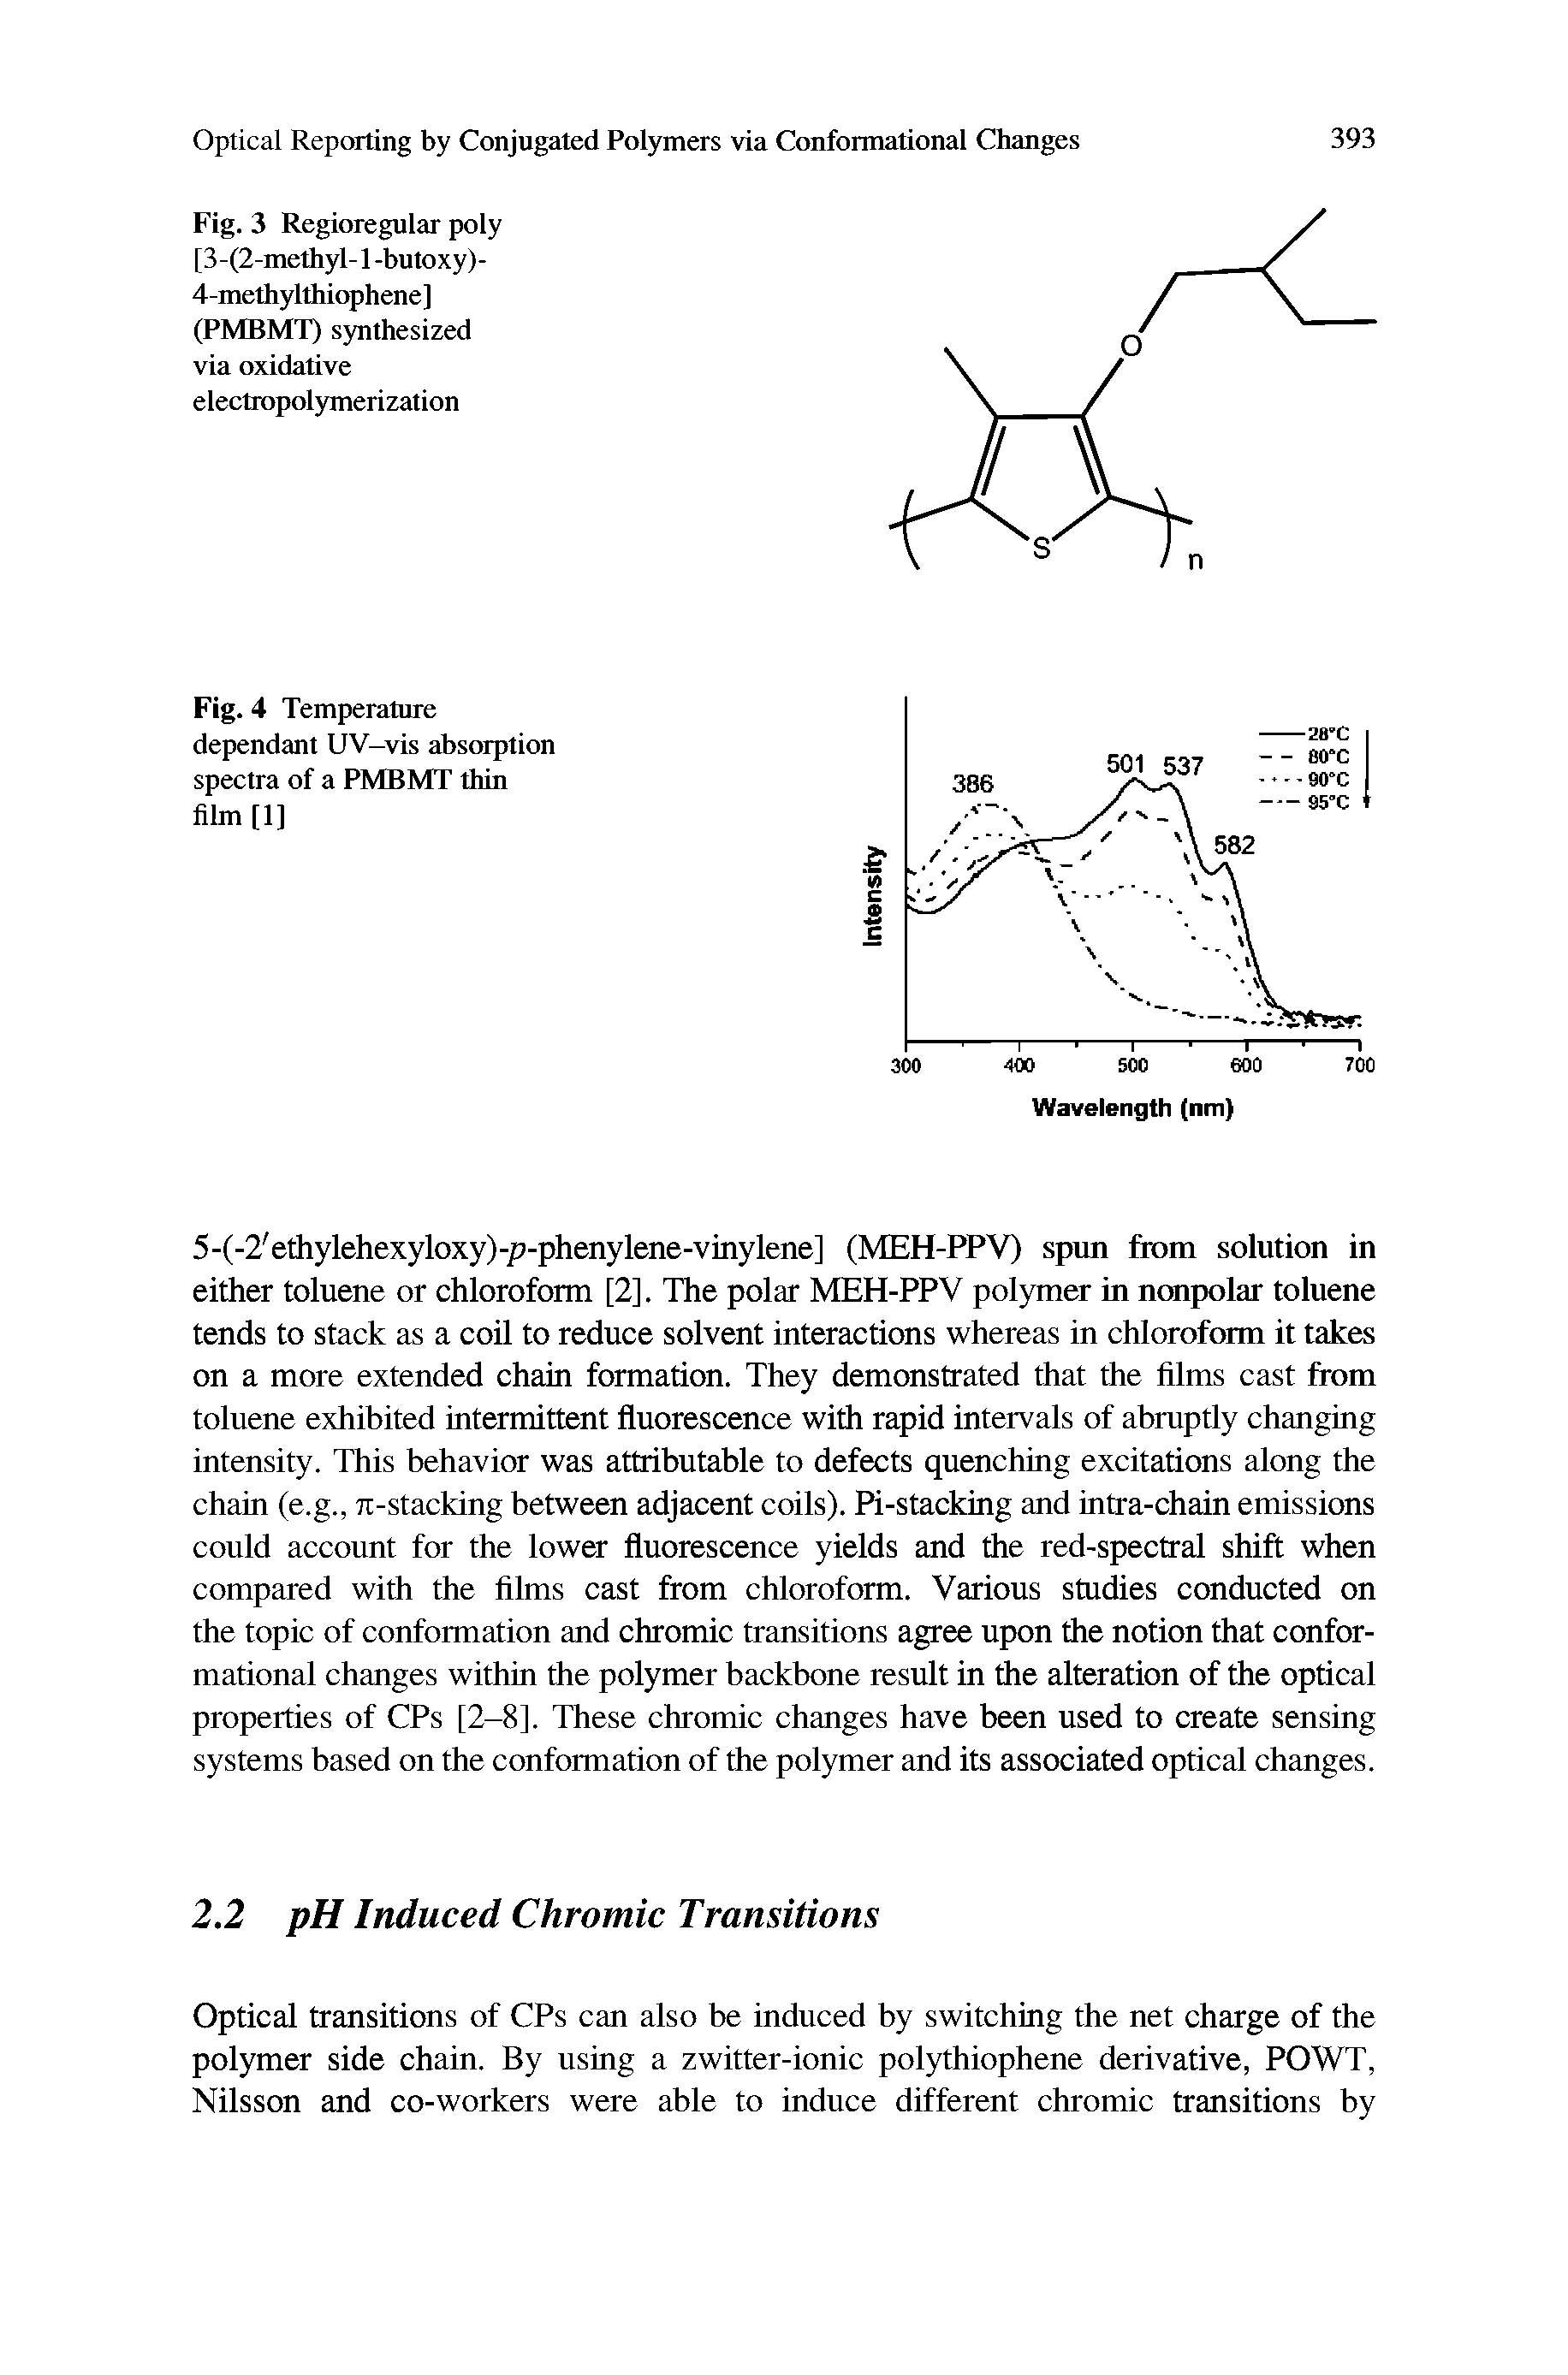 Fig. 3 Regioregular poly [3-(2-methyl-1 -butoxy)-4-methylthiophene] (PMBMT) synthesized via oxidative electropolymerization...